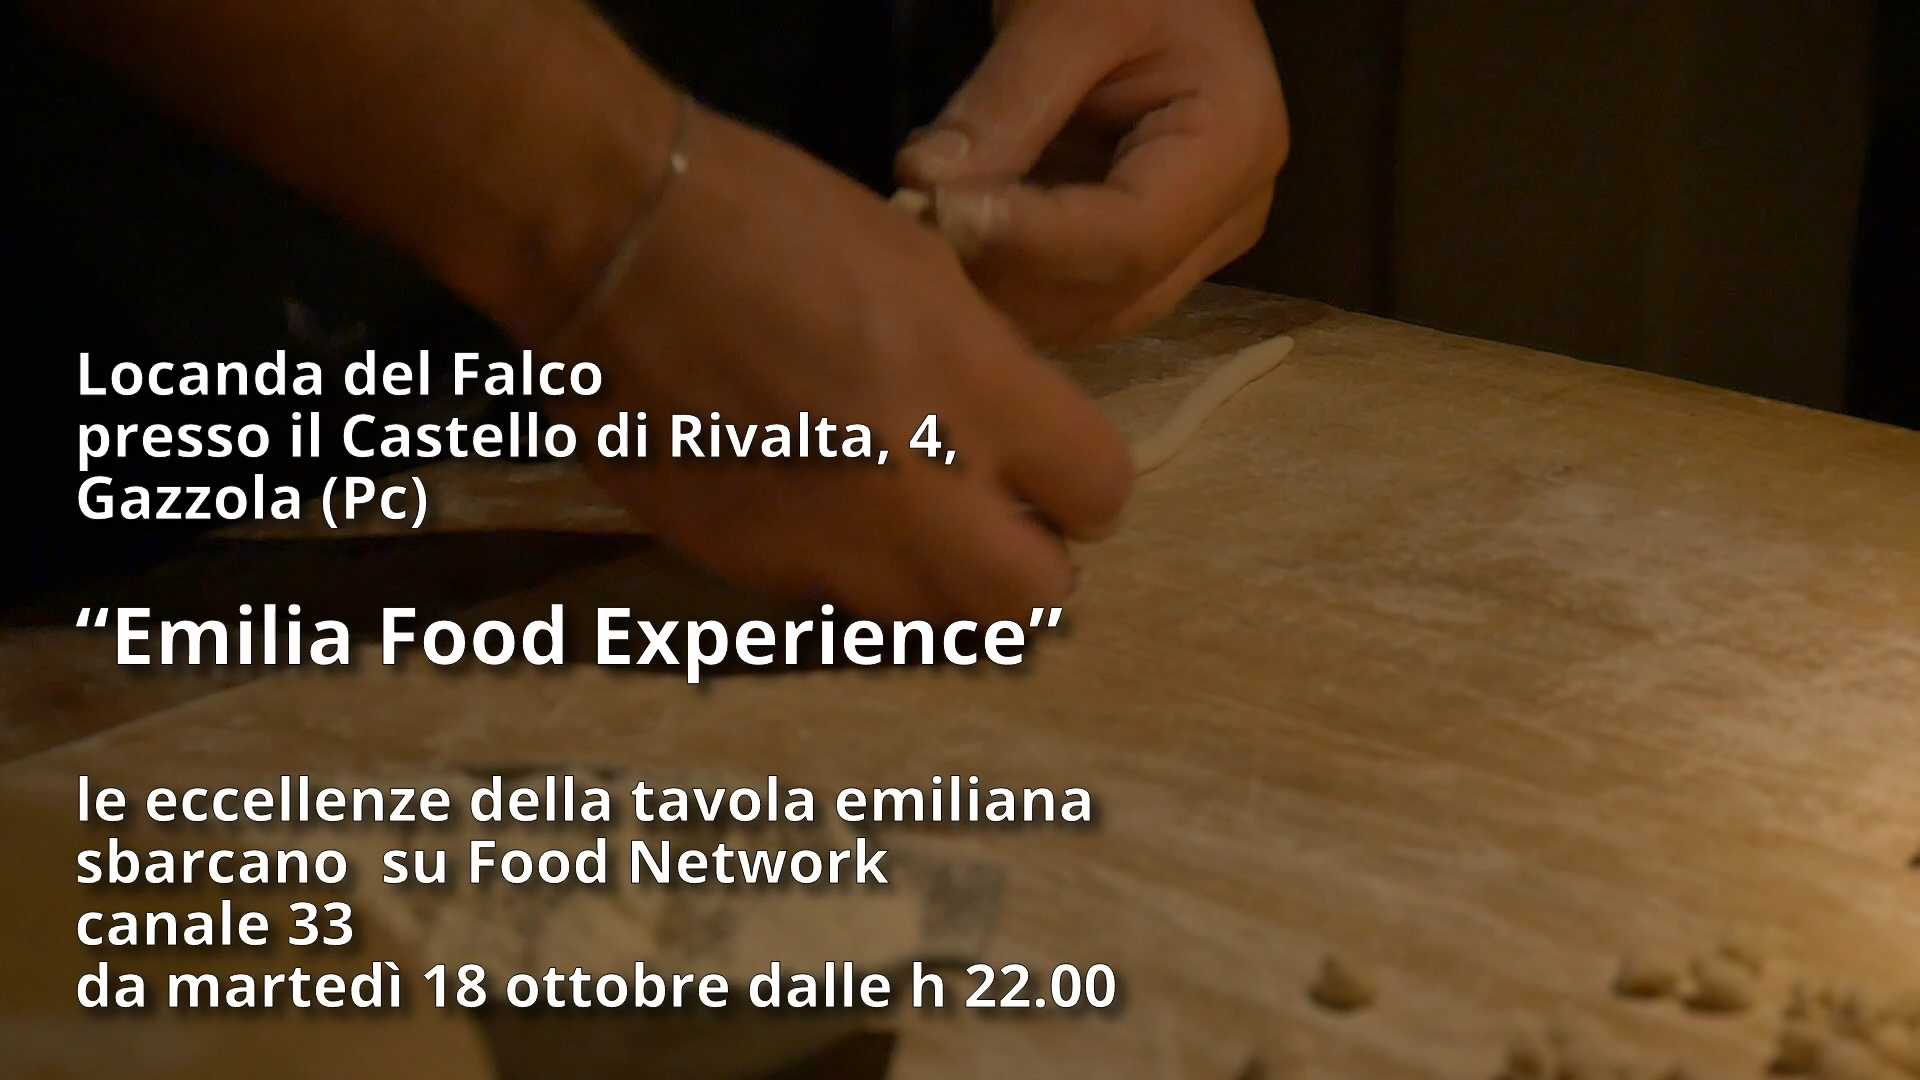 Emilia Food Experience